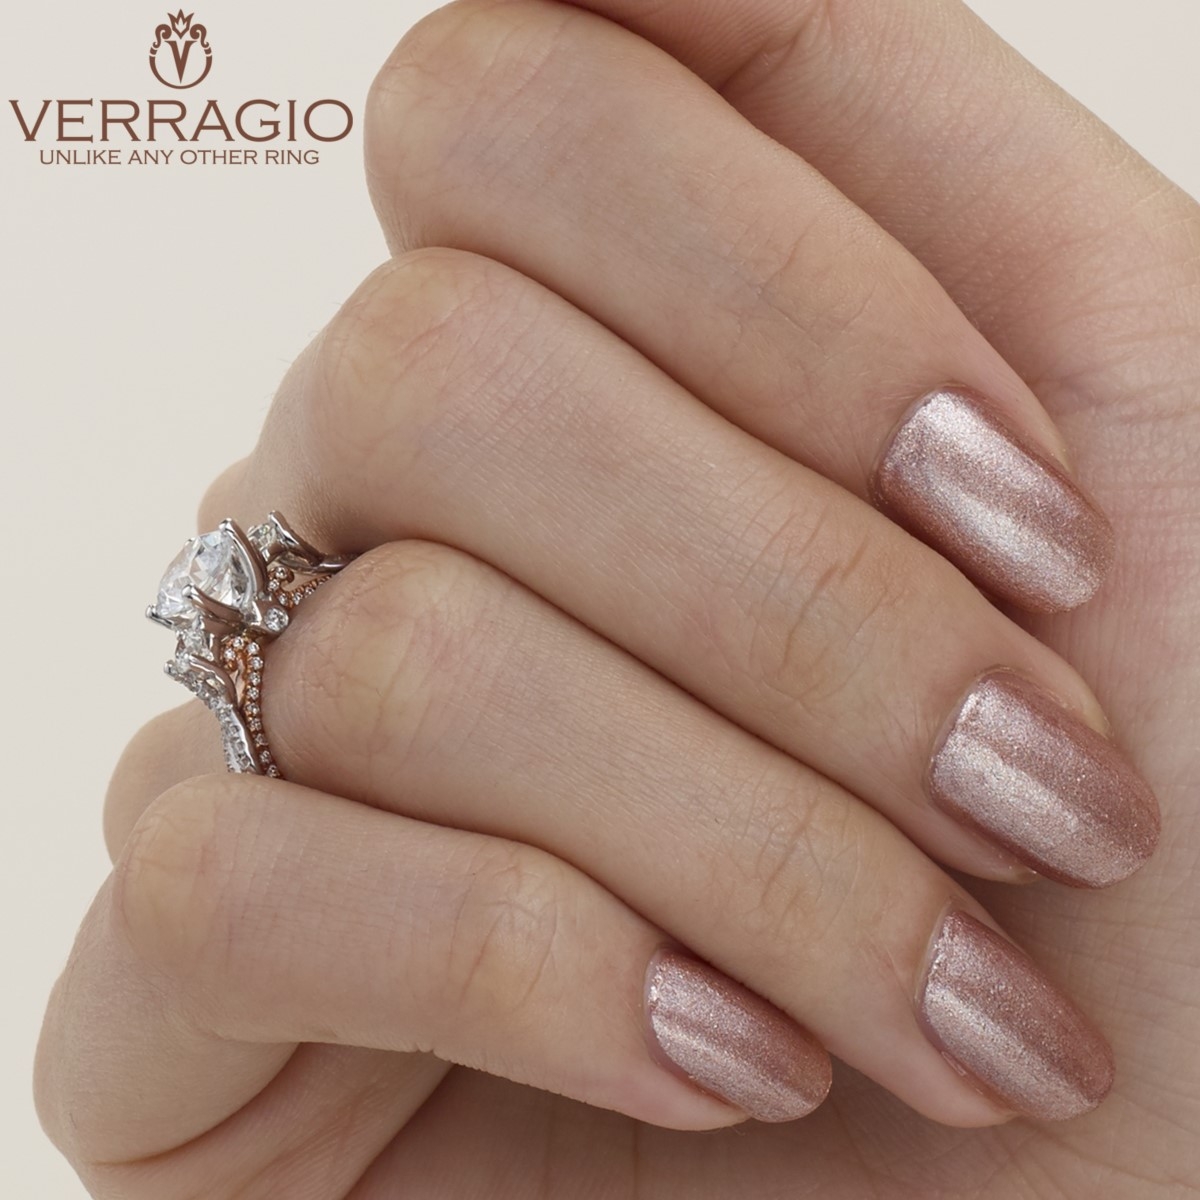 Verragio Couture-0423DR-TT 14 Karat Engagement Ring